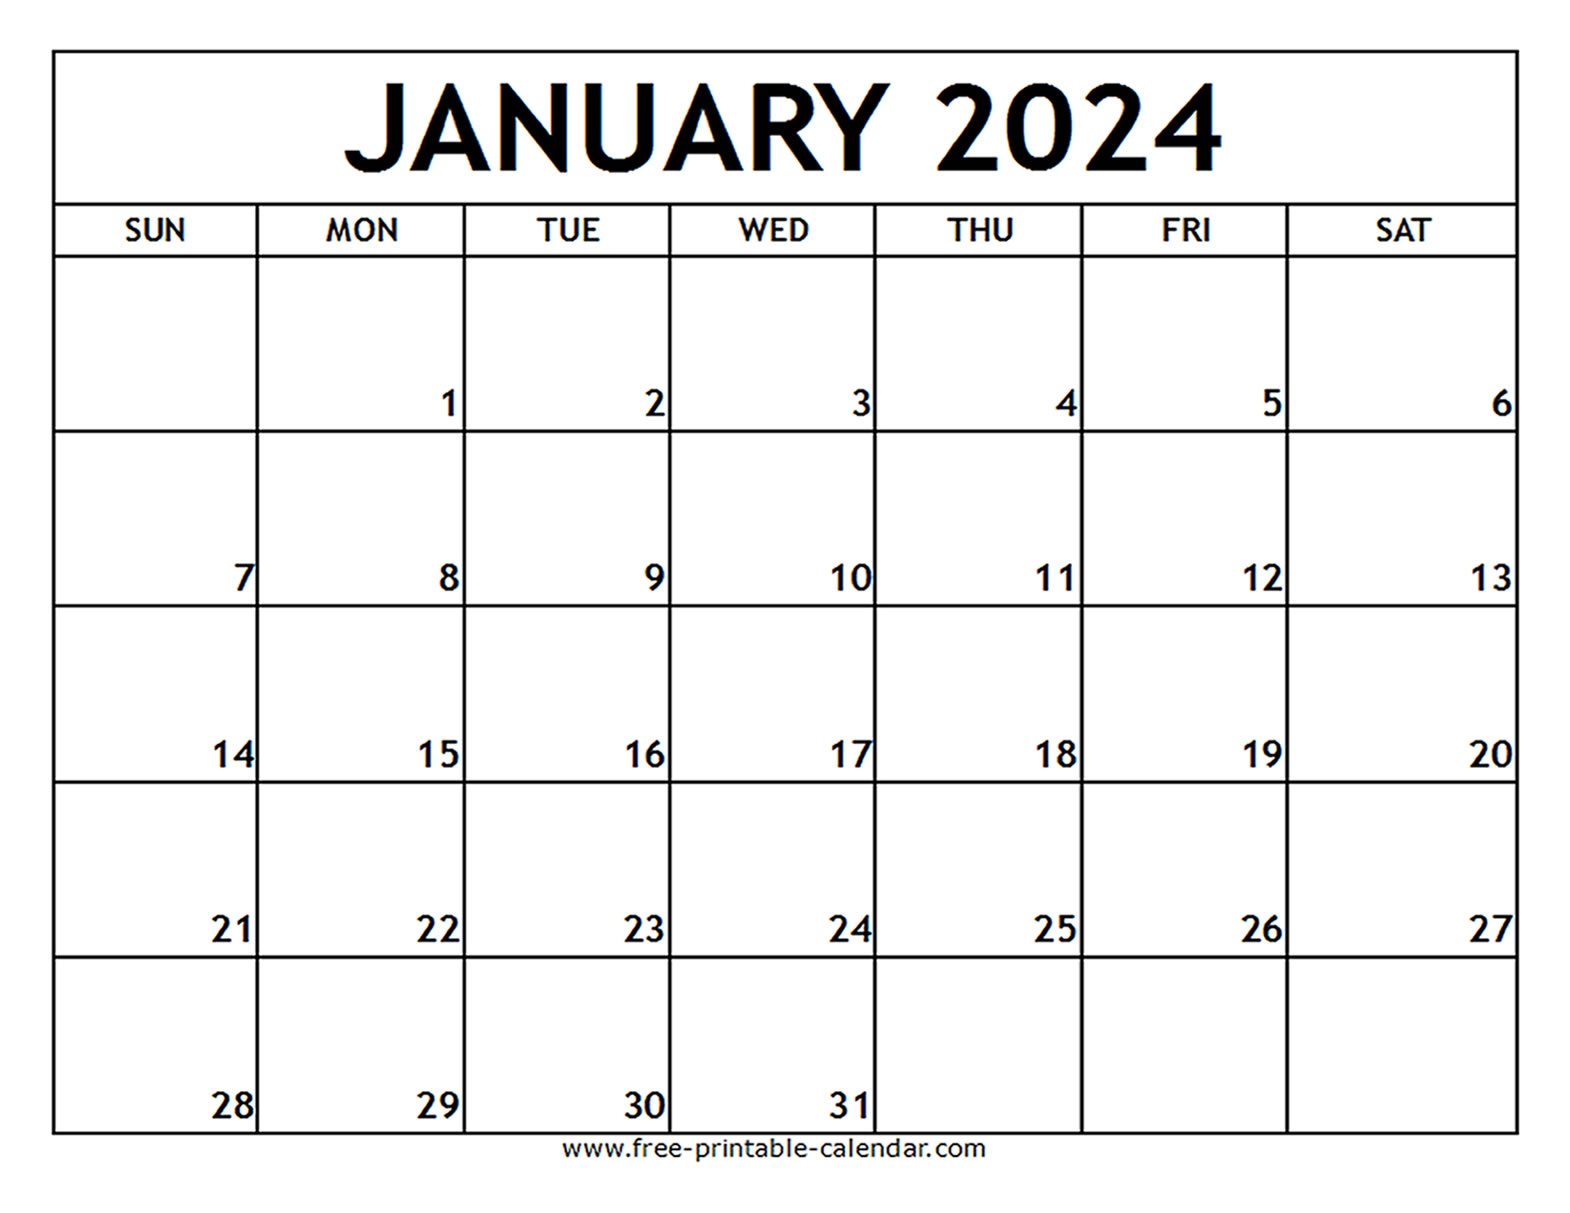 January 2024 Printable Calendar - Free-Printable-Calendar regarding Free Printable Calendar 2024 Canada Monthly